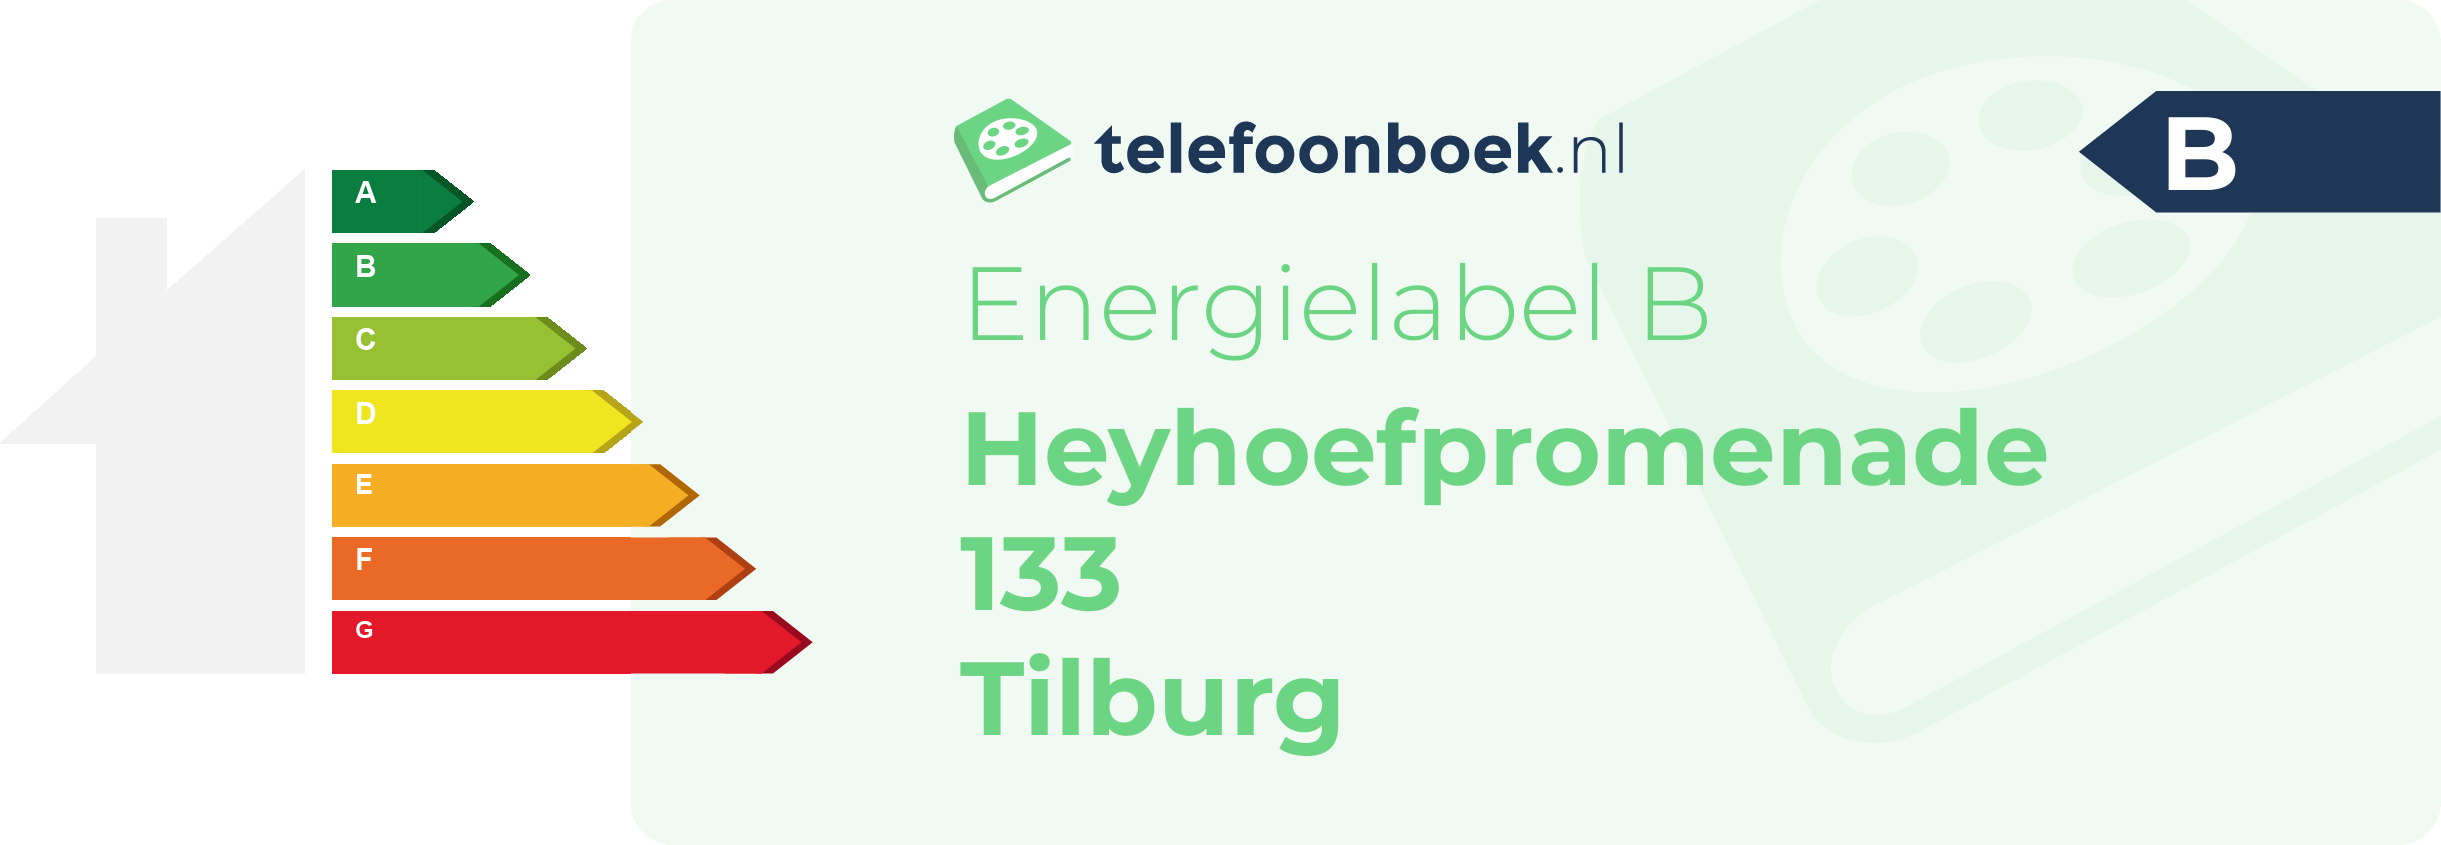 Energielabel Heyhoefpromenade 133 Tilburg